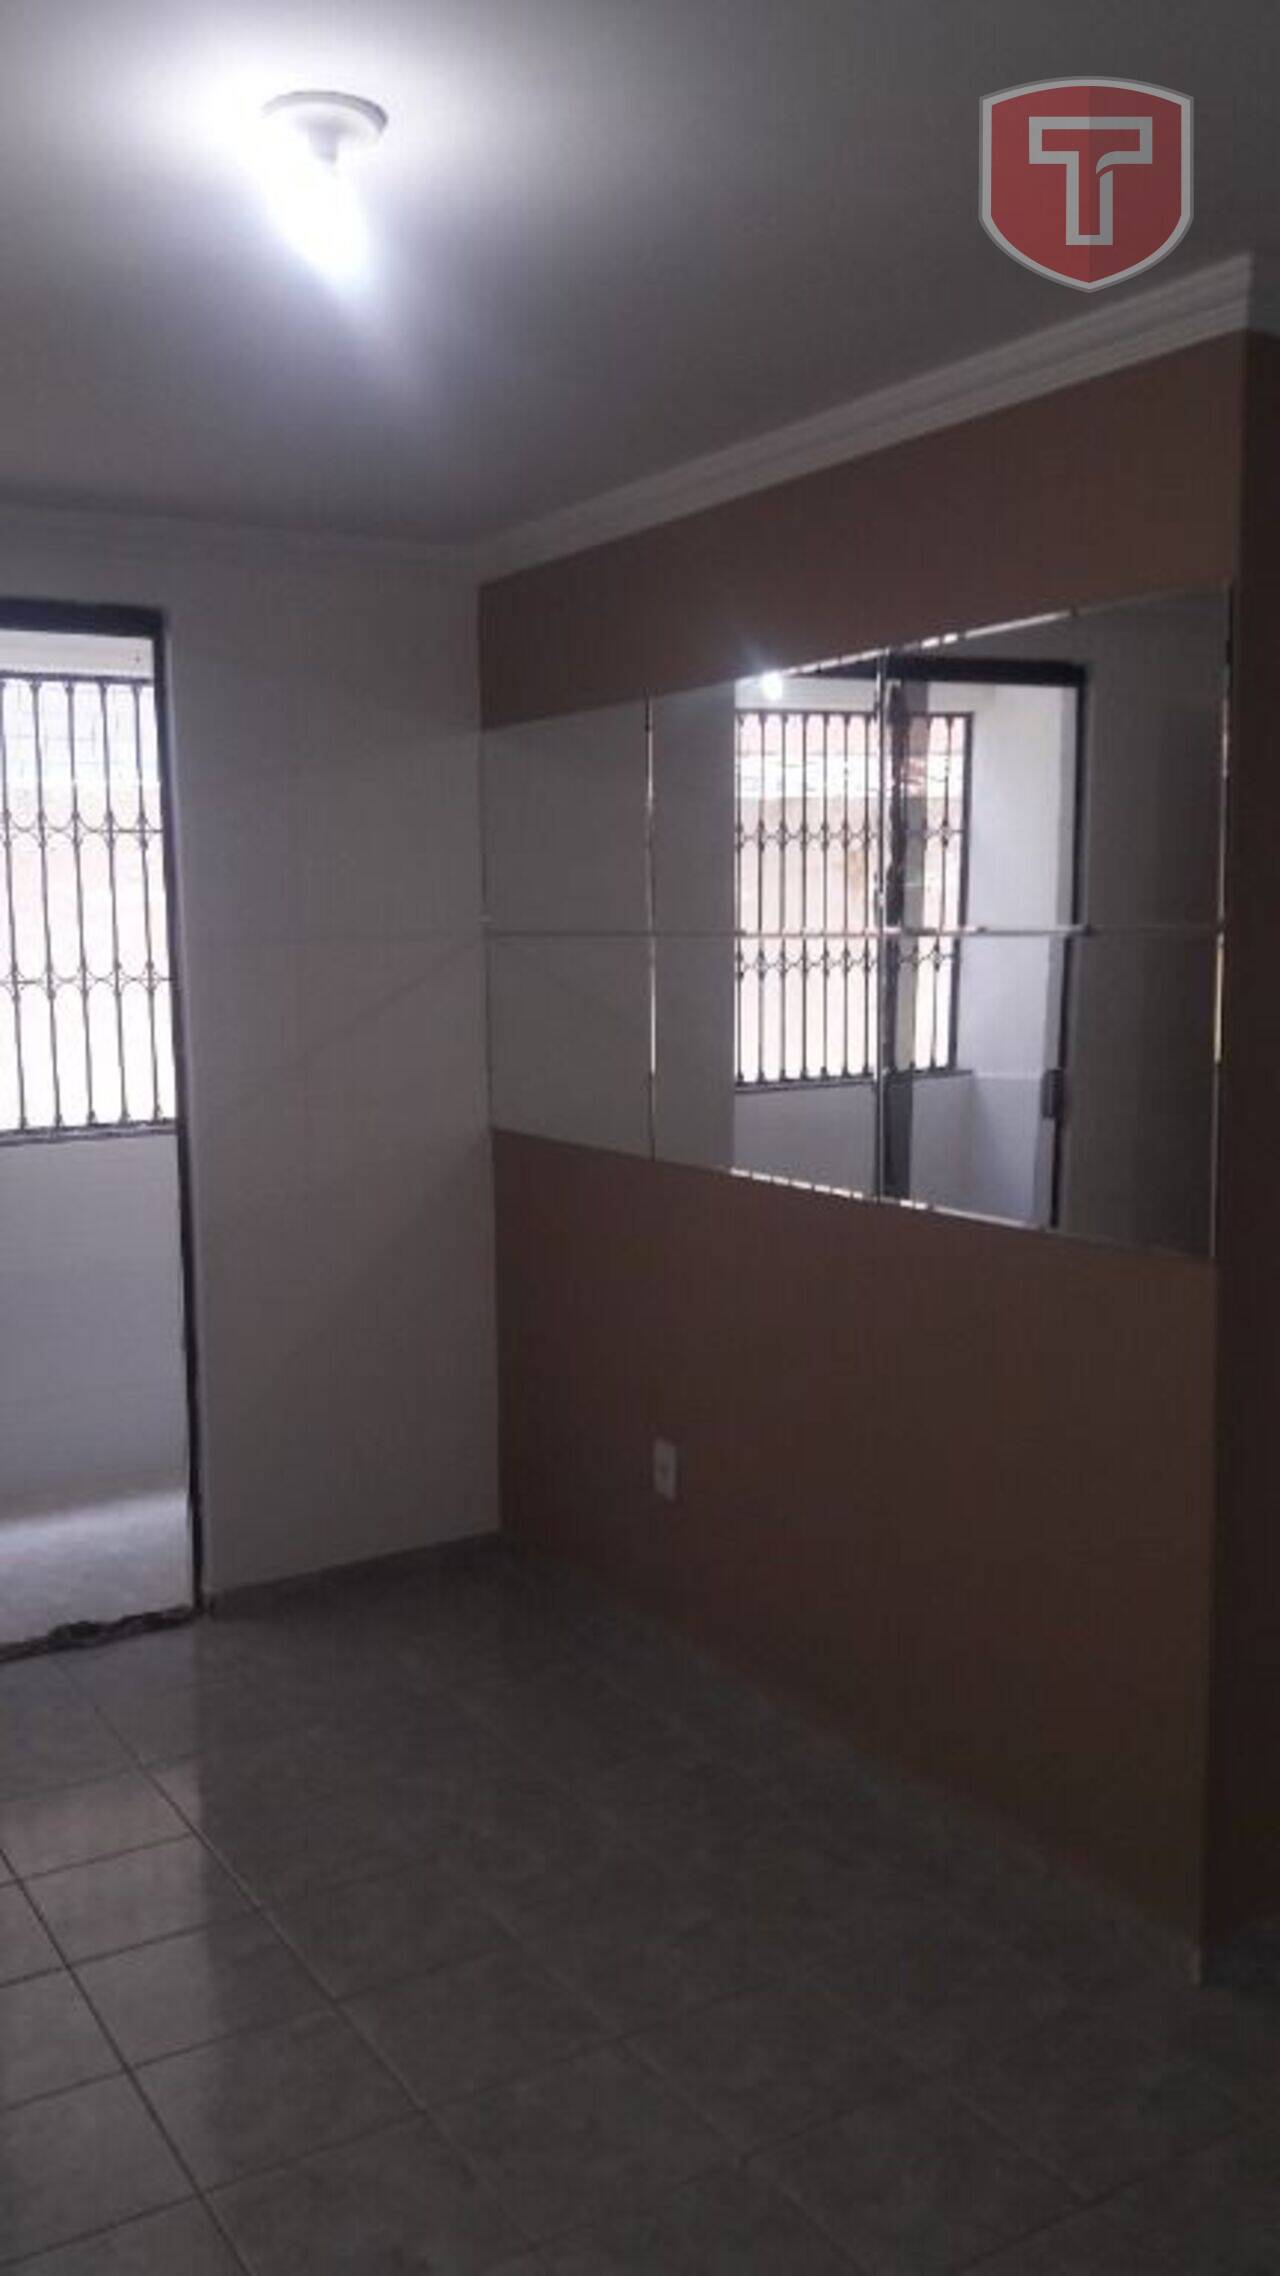 Residencial Braz - Apartamento com 2 dormitórios à venda - José Américo de Almeida, João Pessoa/PB